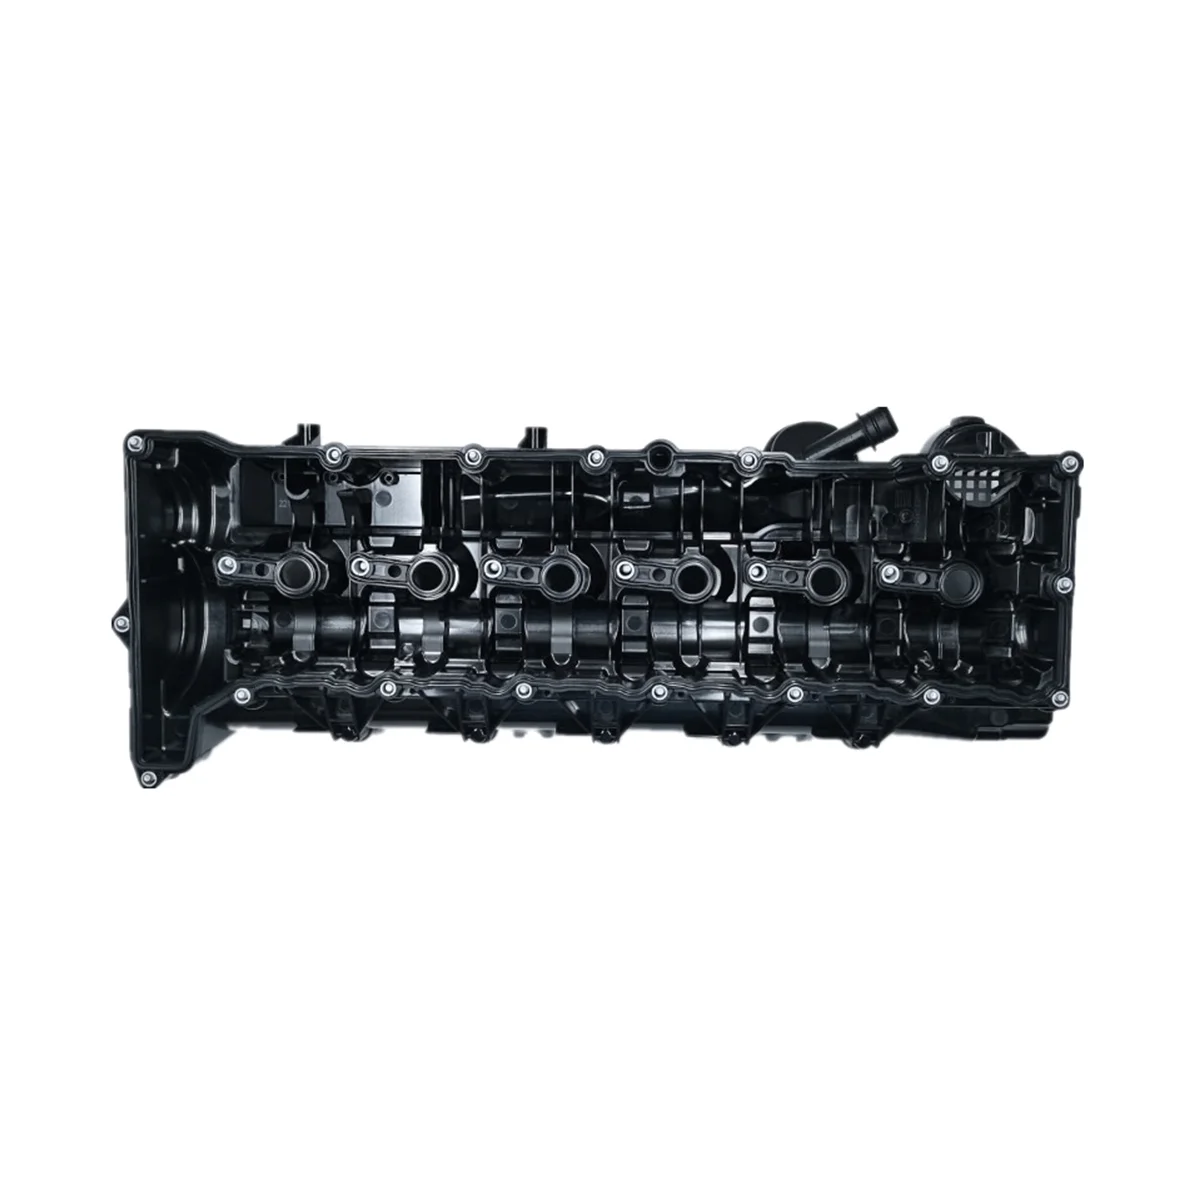 

Крышка камеры клапана в сборе головка цилиндра двигателя для BMW X3 X5 X6 E70 E71 E90 E91 E92 E93 F25 F26 F01 F02 F31 11128515745